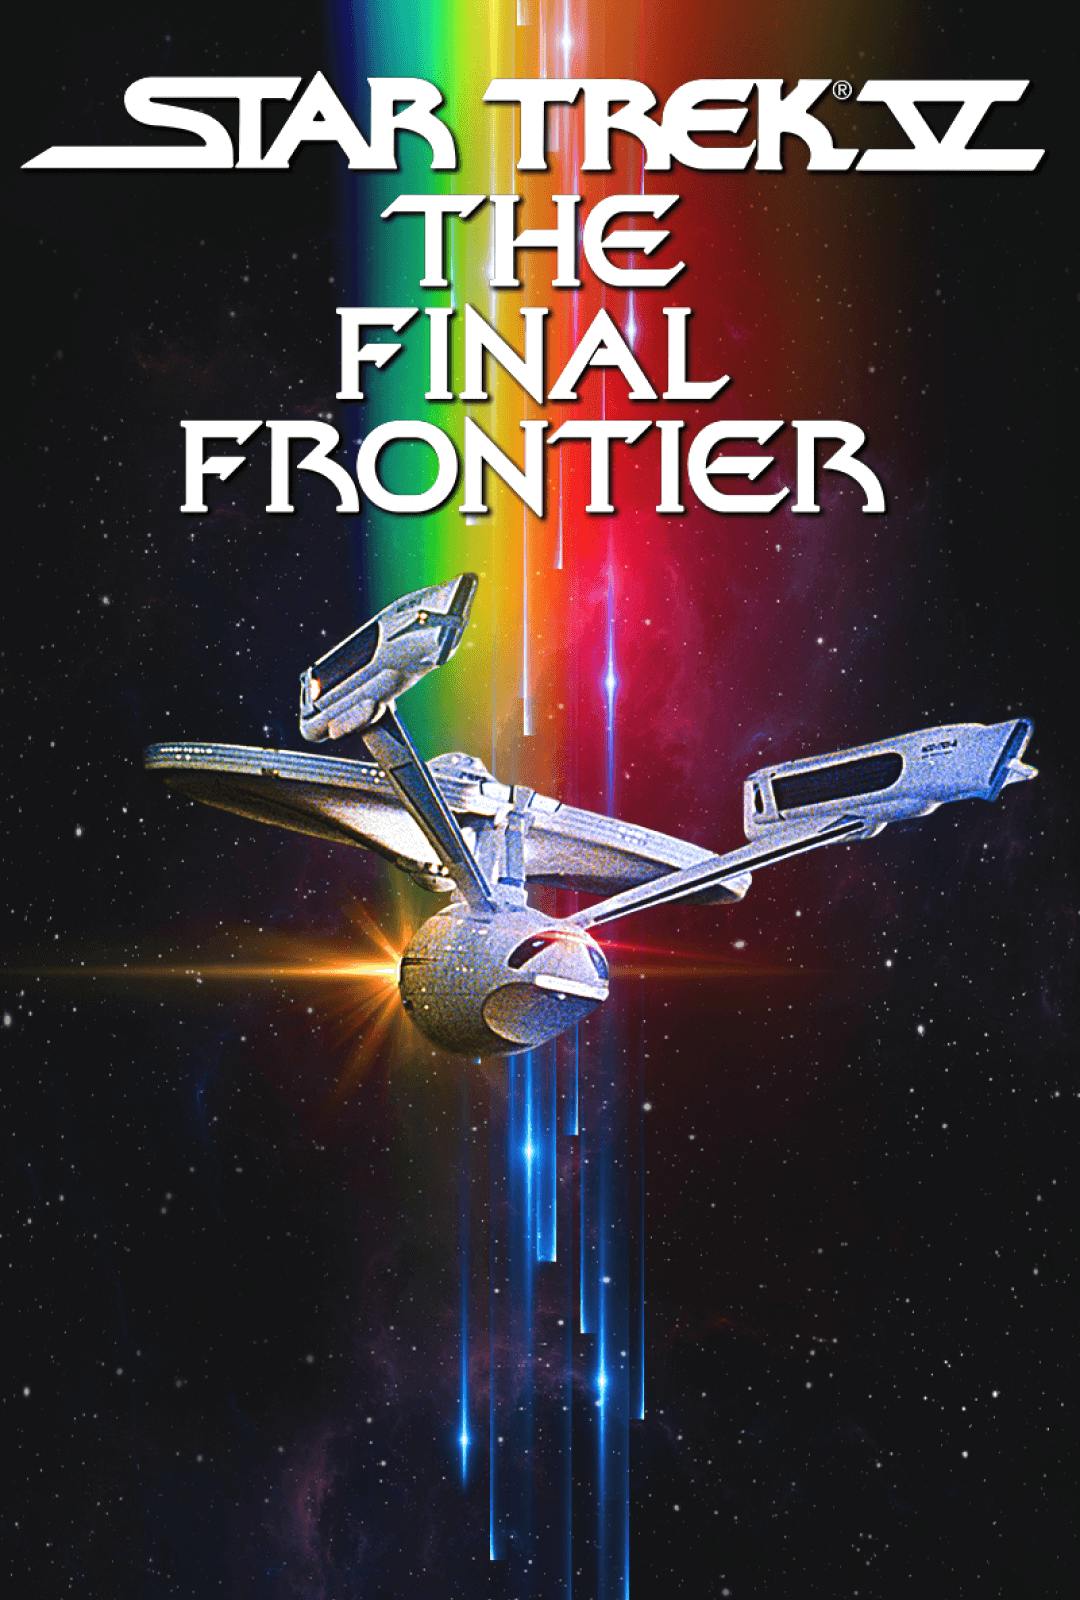 Poster art for Star Trek V: The Final Frontier